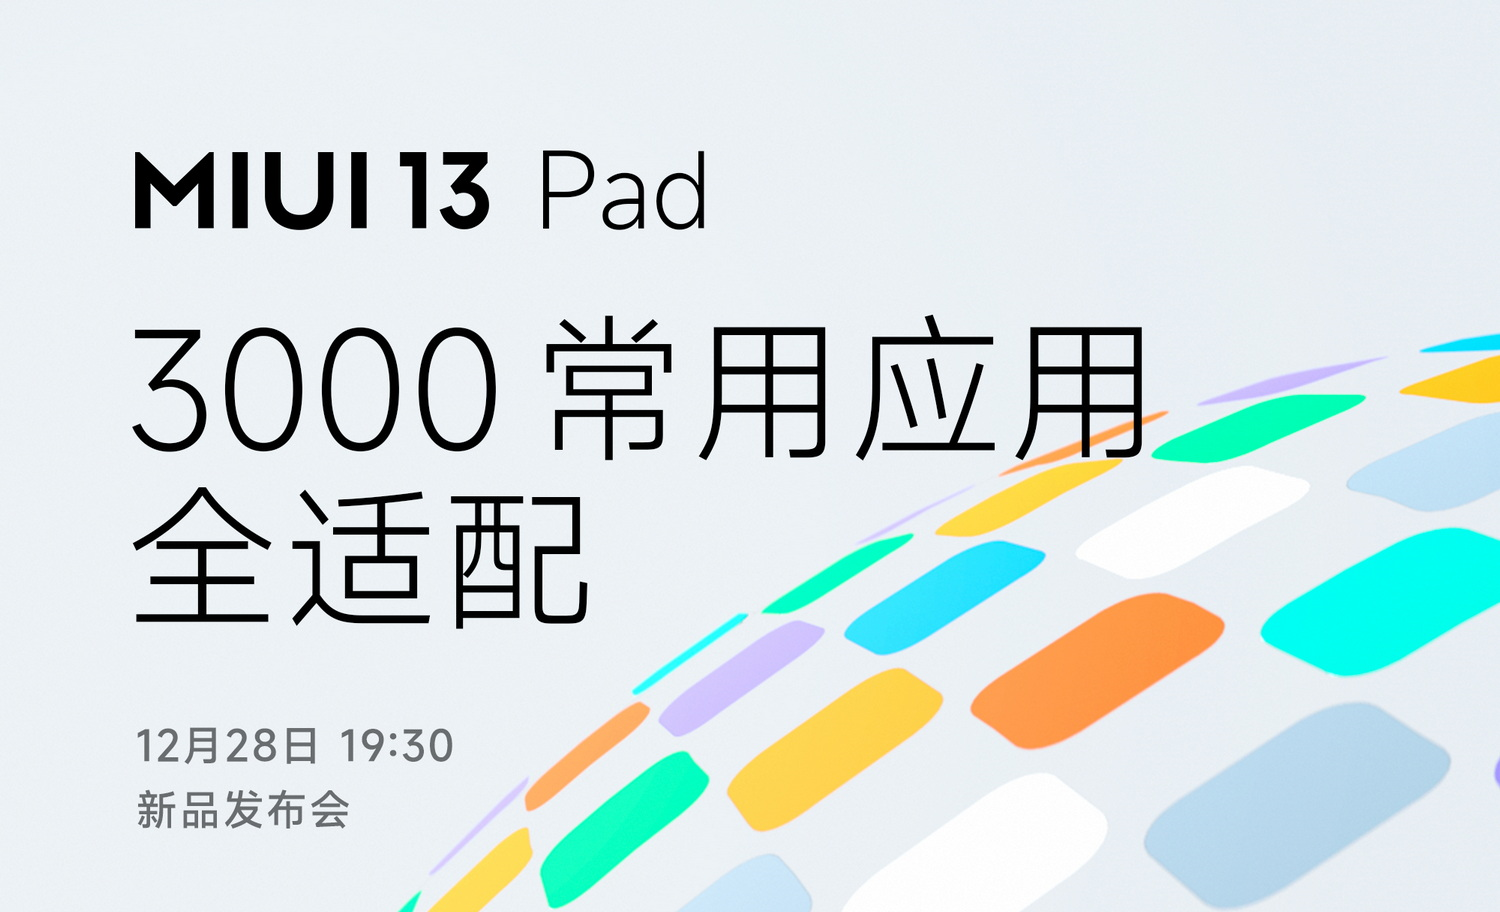 Xiaomi présentera une version spéciale de MIUI 13 pour tablettes